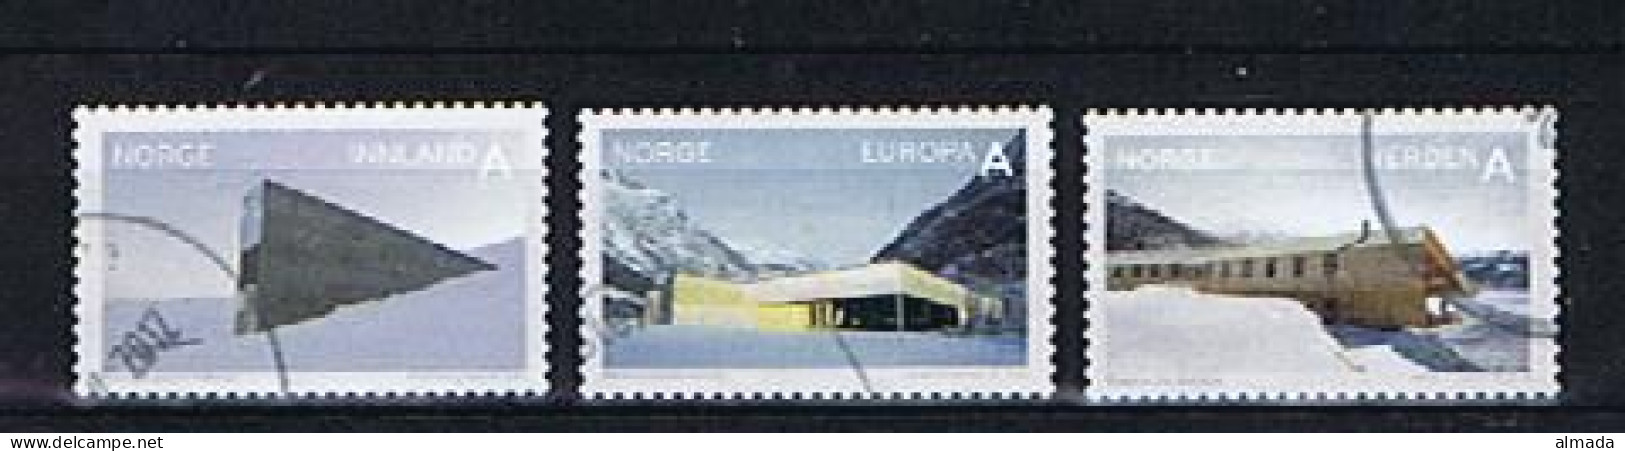 Norwegen, Norway 2011: Michel 1752-1754 Used, Gestempelt - Used Stamps